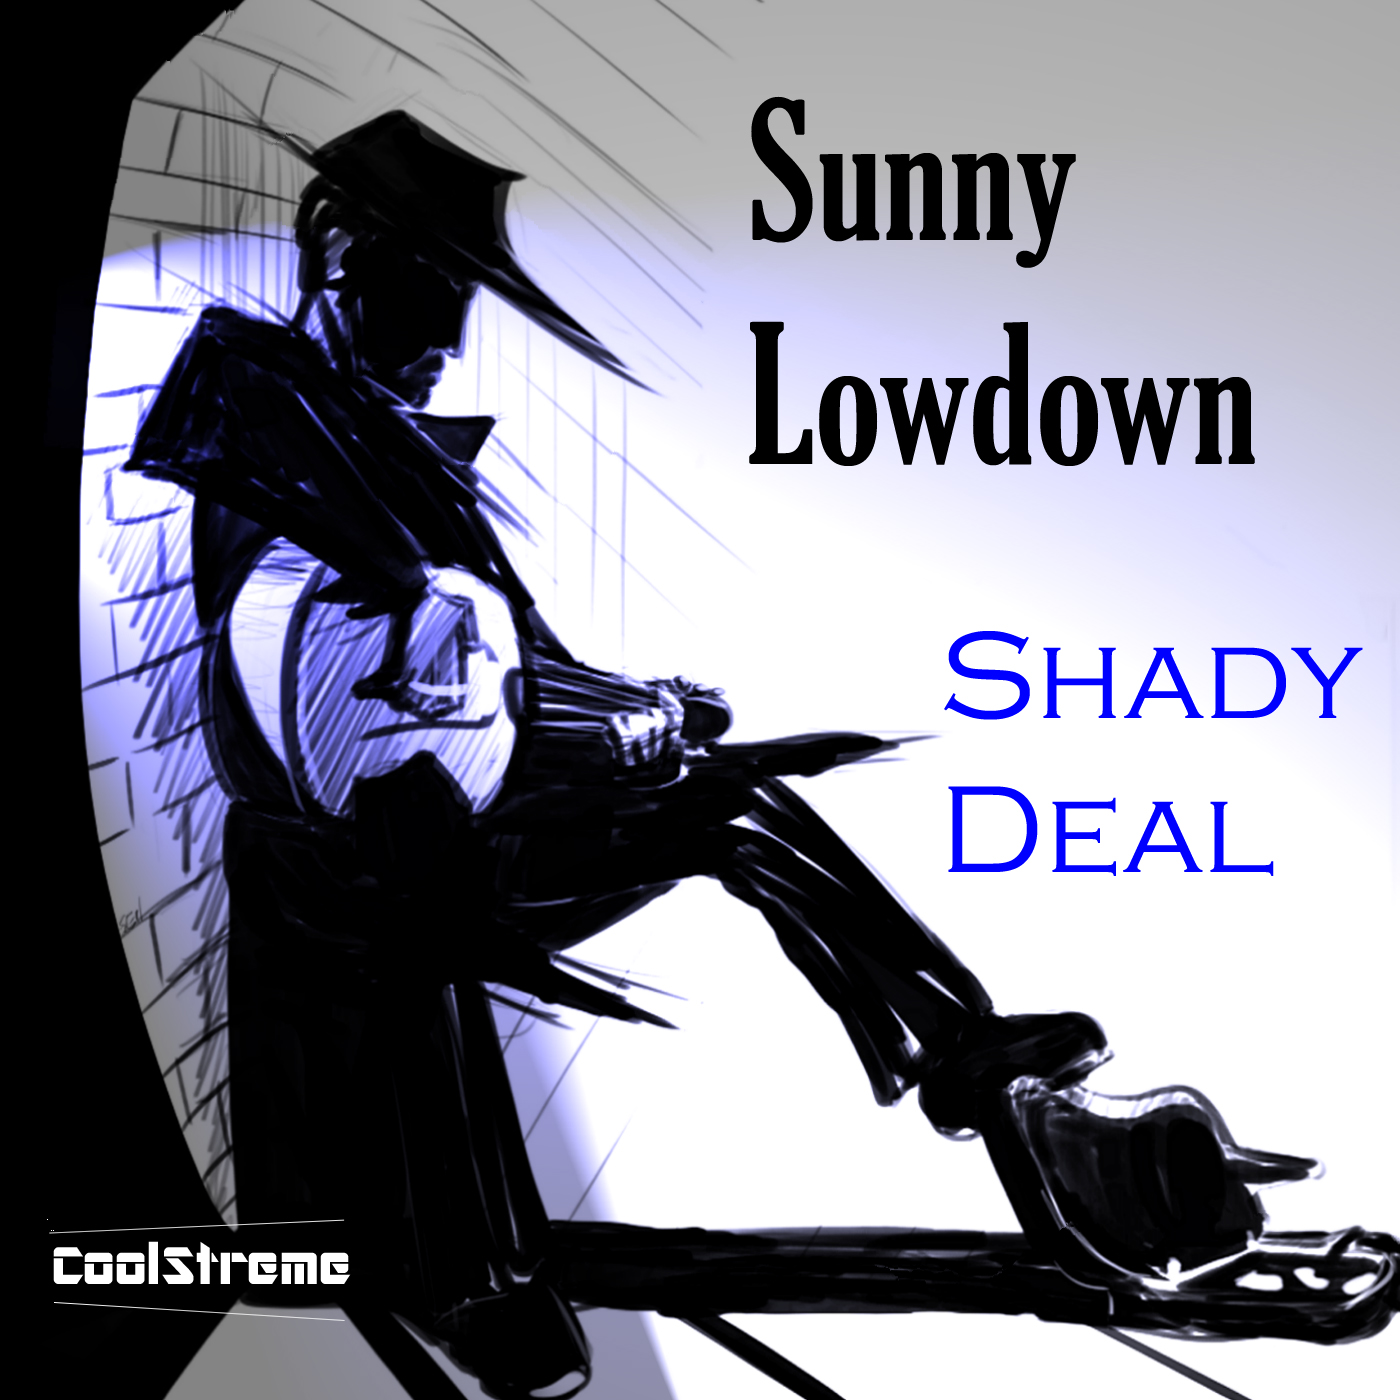 Sunny Lowdown – Shady Deal